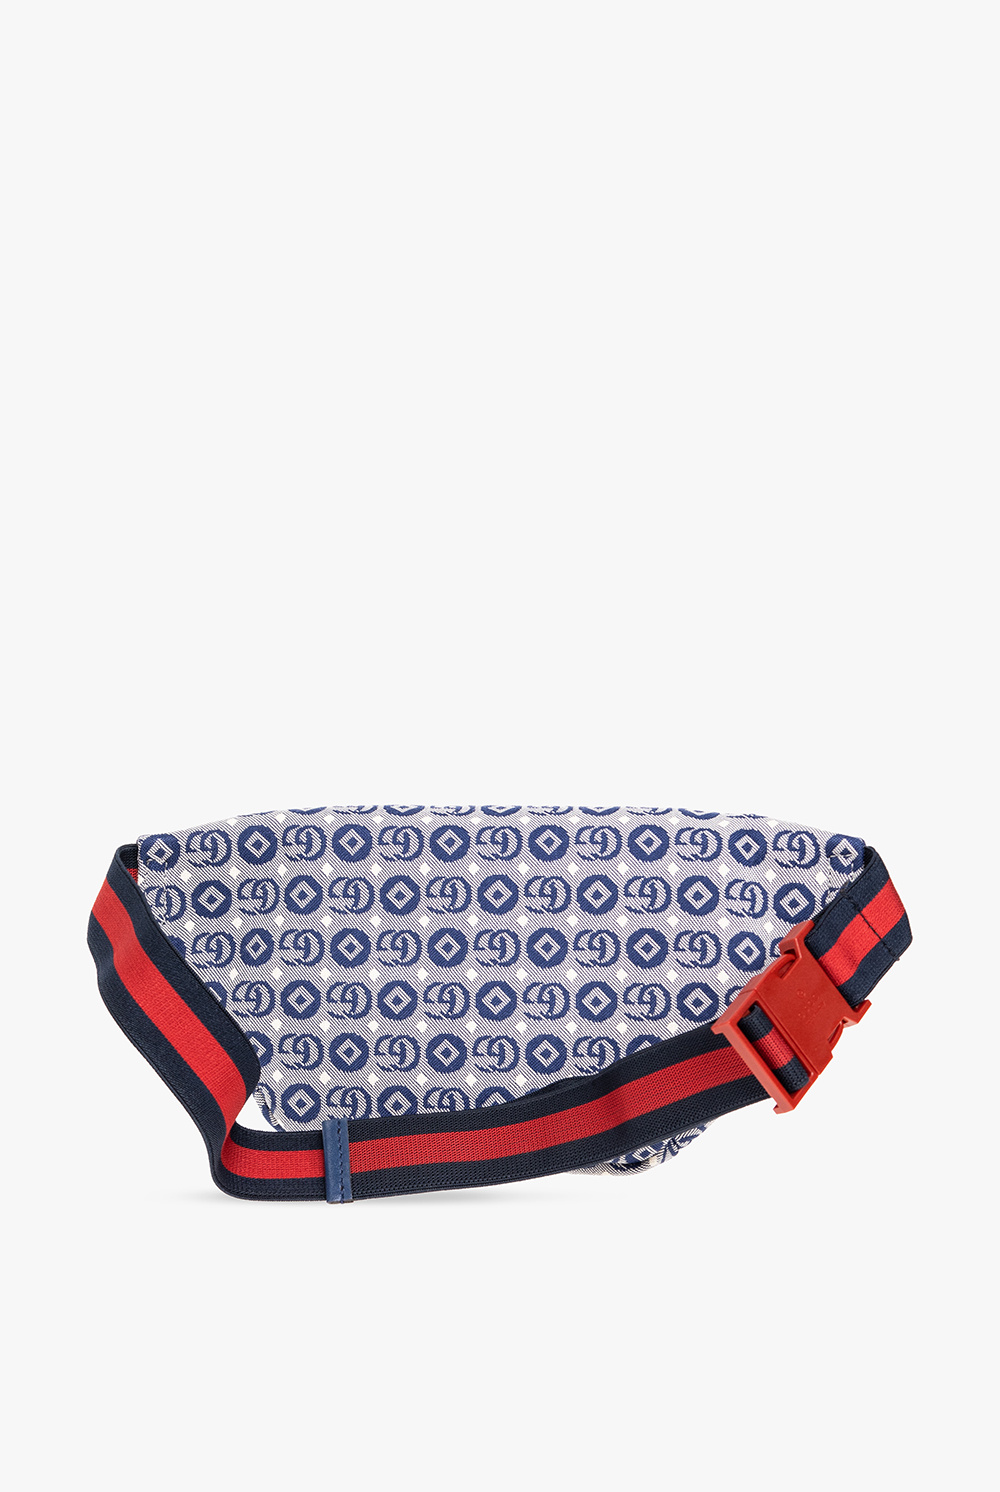 Gucci Kids Belt bag with logo